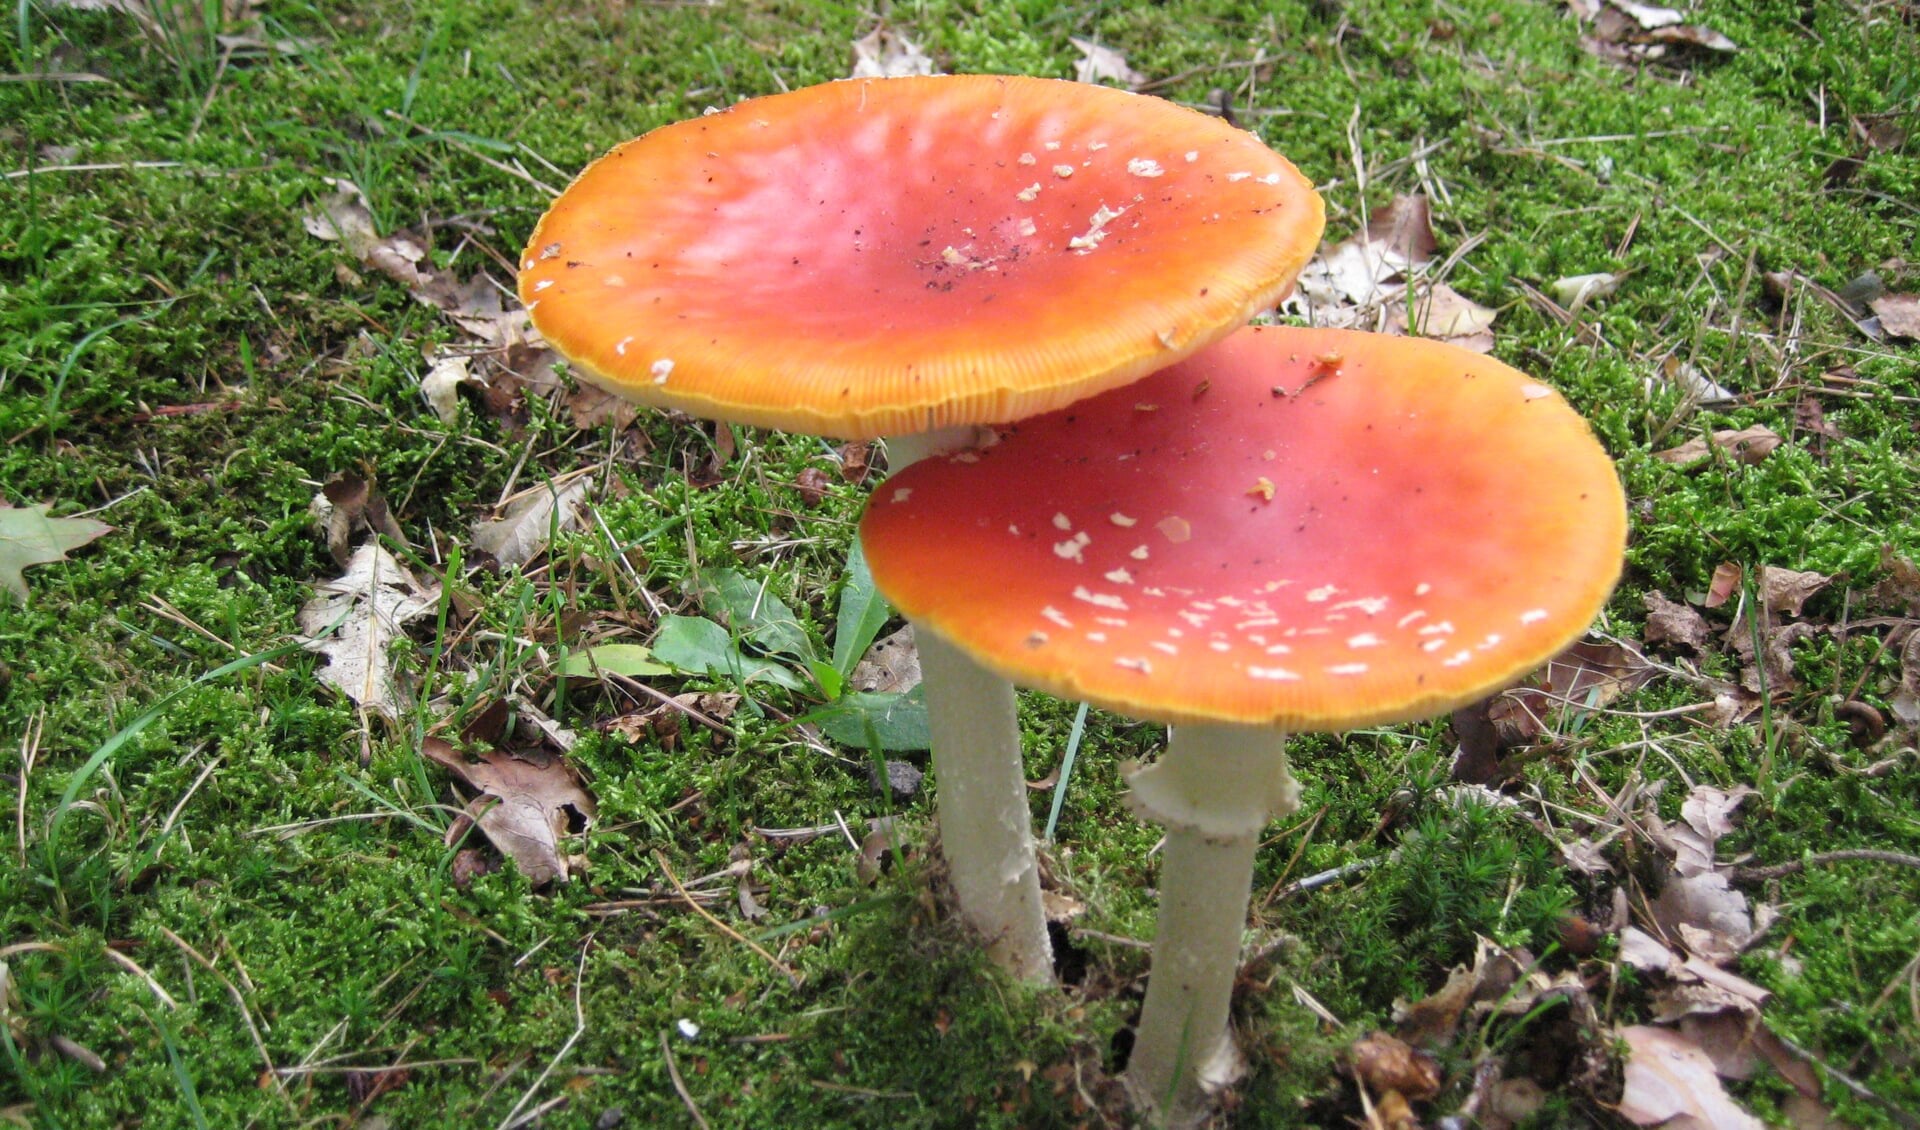 7 oktober - paddenstoelen zoeken en natekenen.